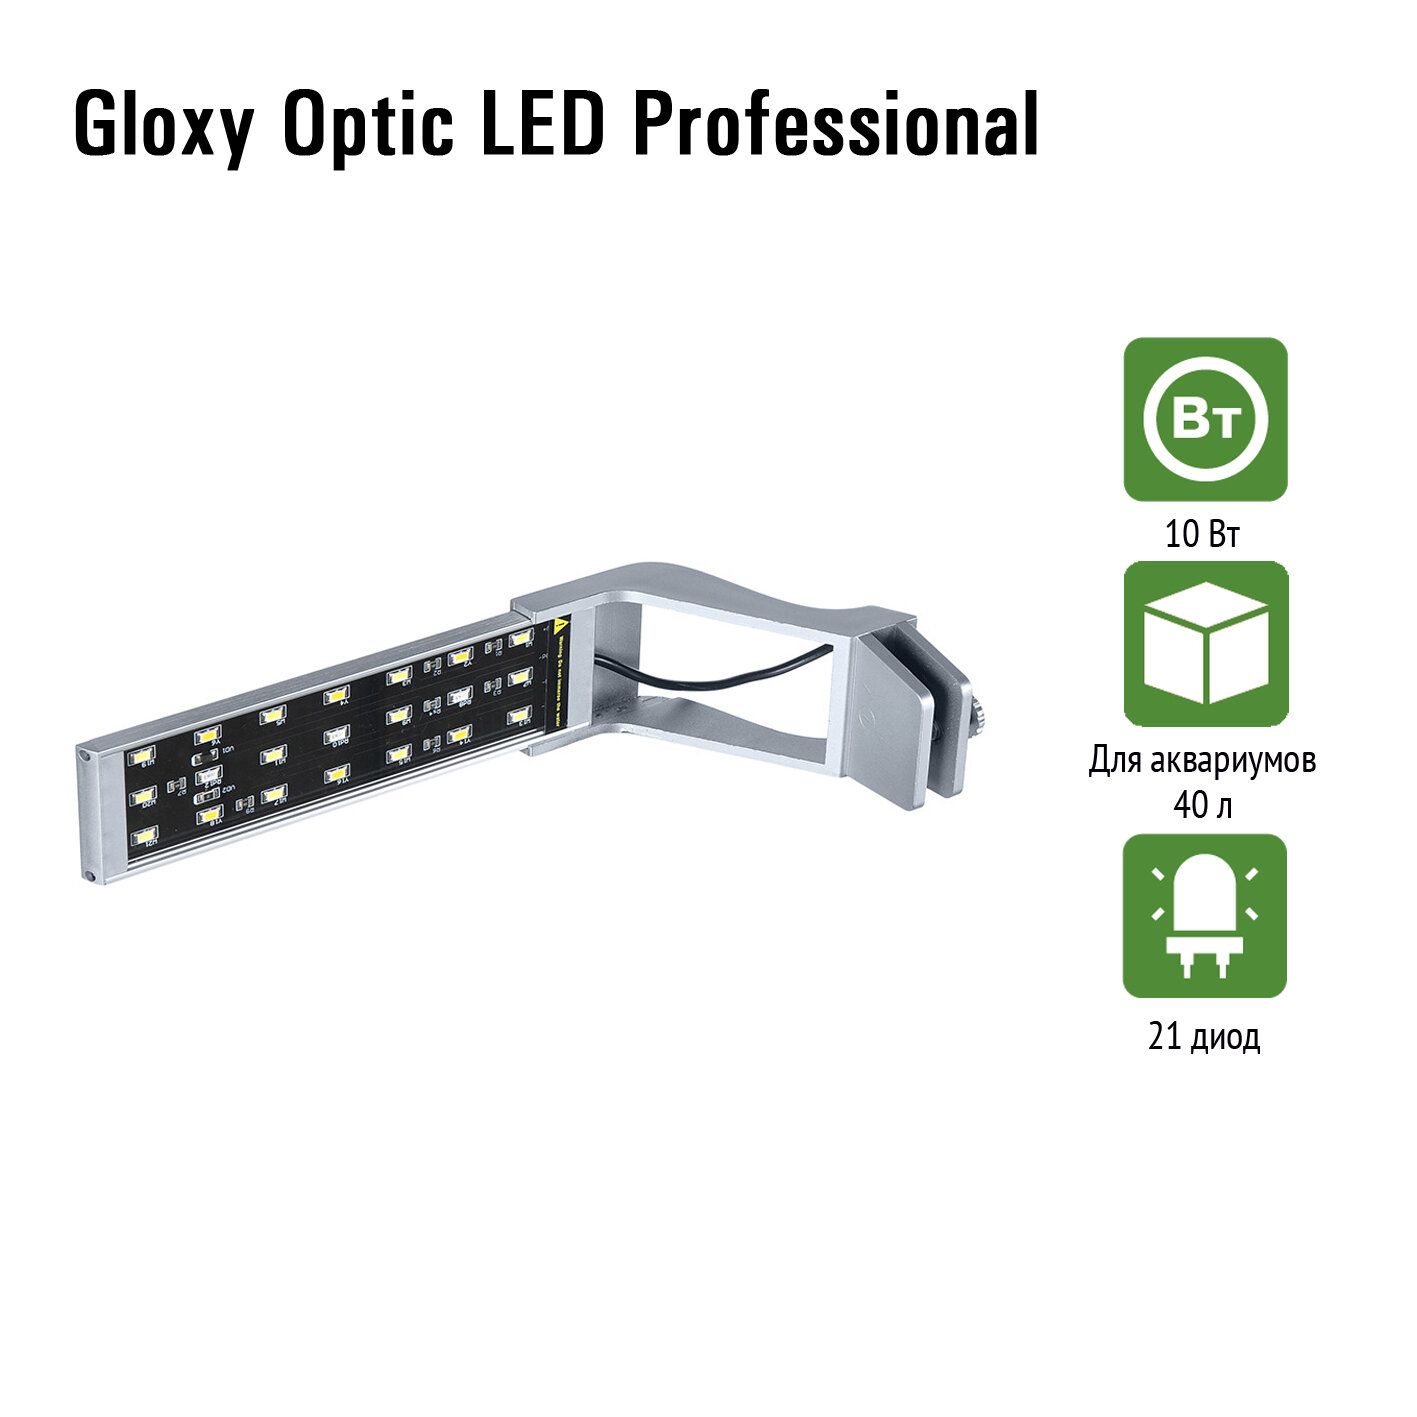 Аквариумный светильник GLOXY Optic LED Professional, 10 Вт